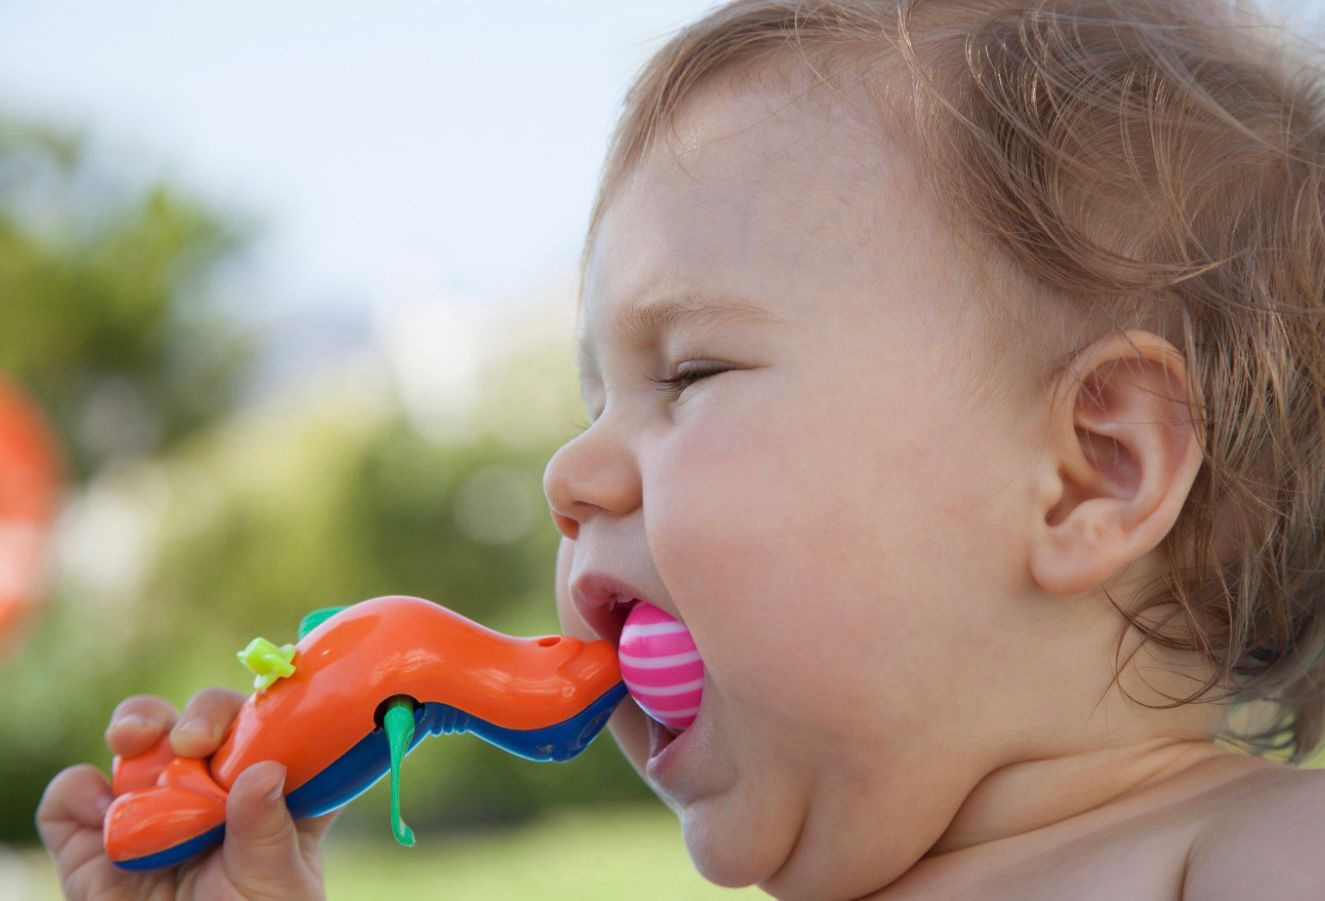 Pneumologista alerta sobre riscos dos objetos e pequenos alimentos com crianças